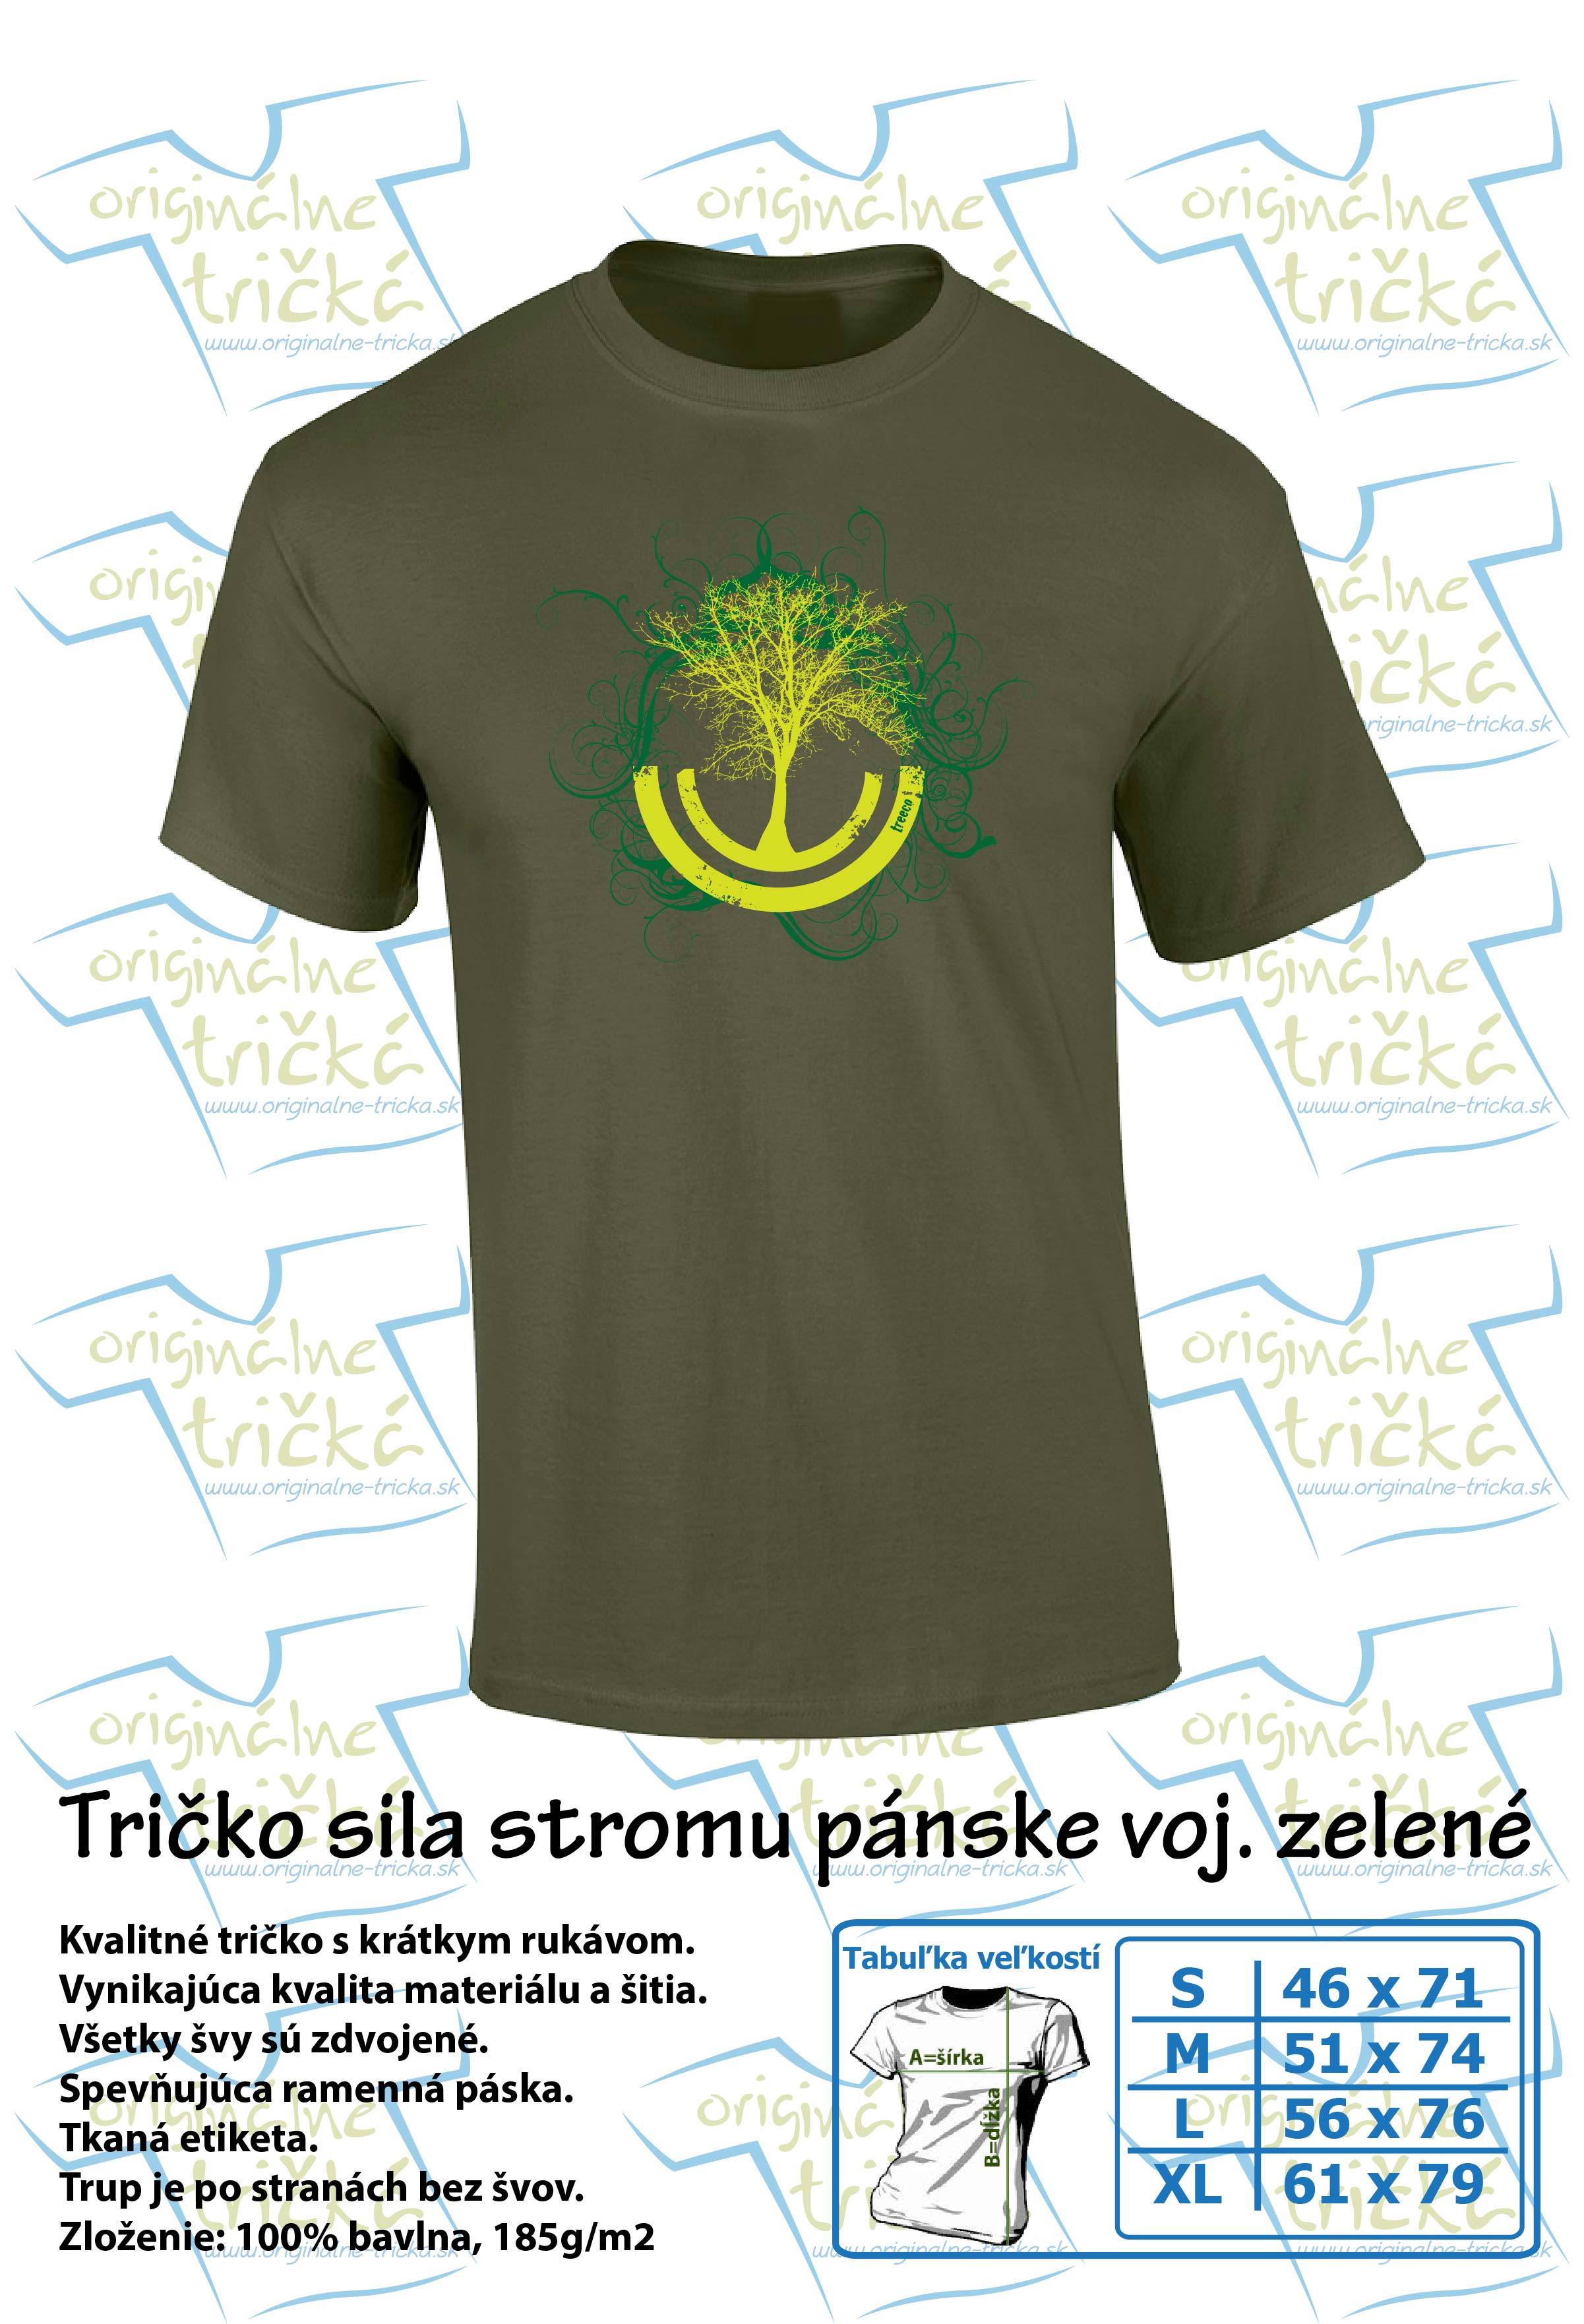 Tričko sila stromu pánske vojenské zelené